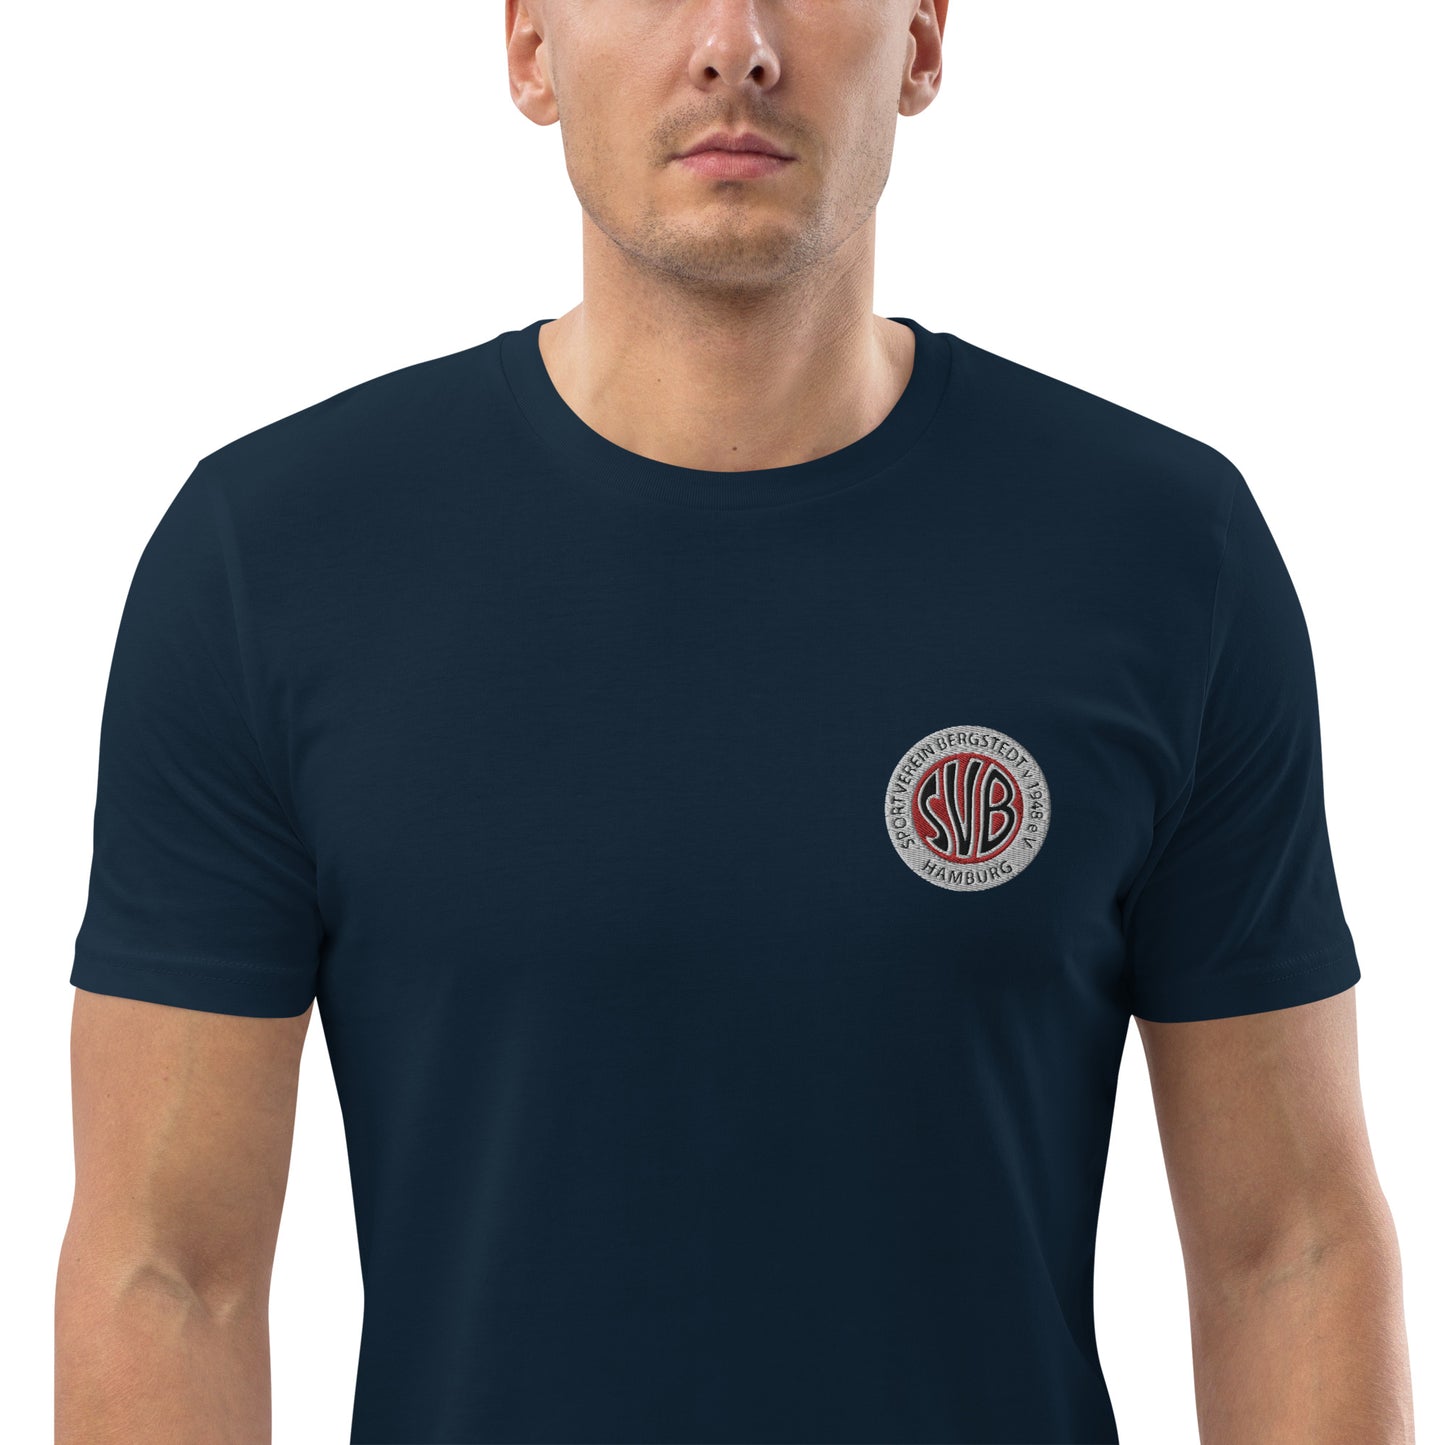 SVB Shirt │ T-Shirt Unisex-Bio-Baumwoll-T-Shirt